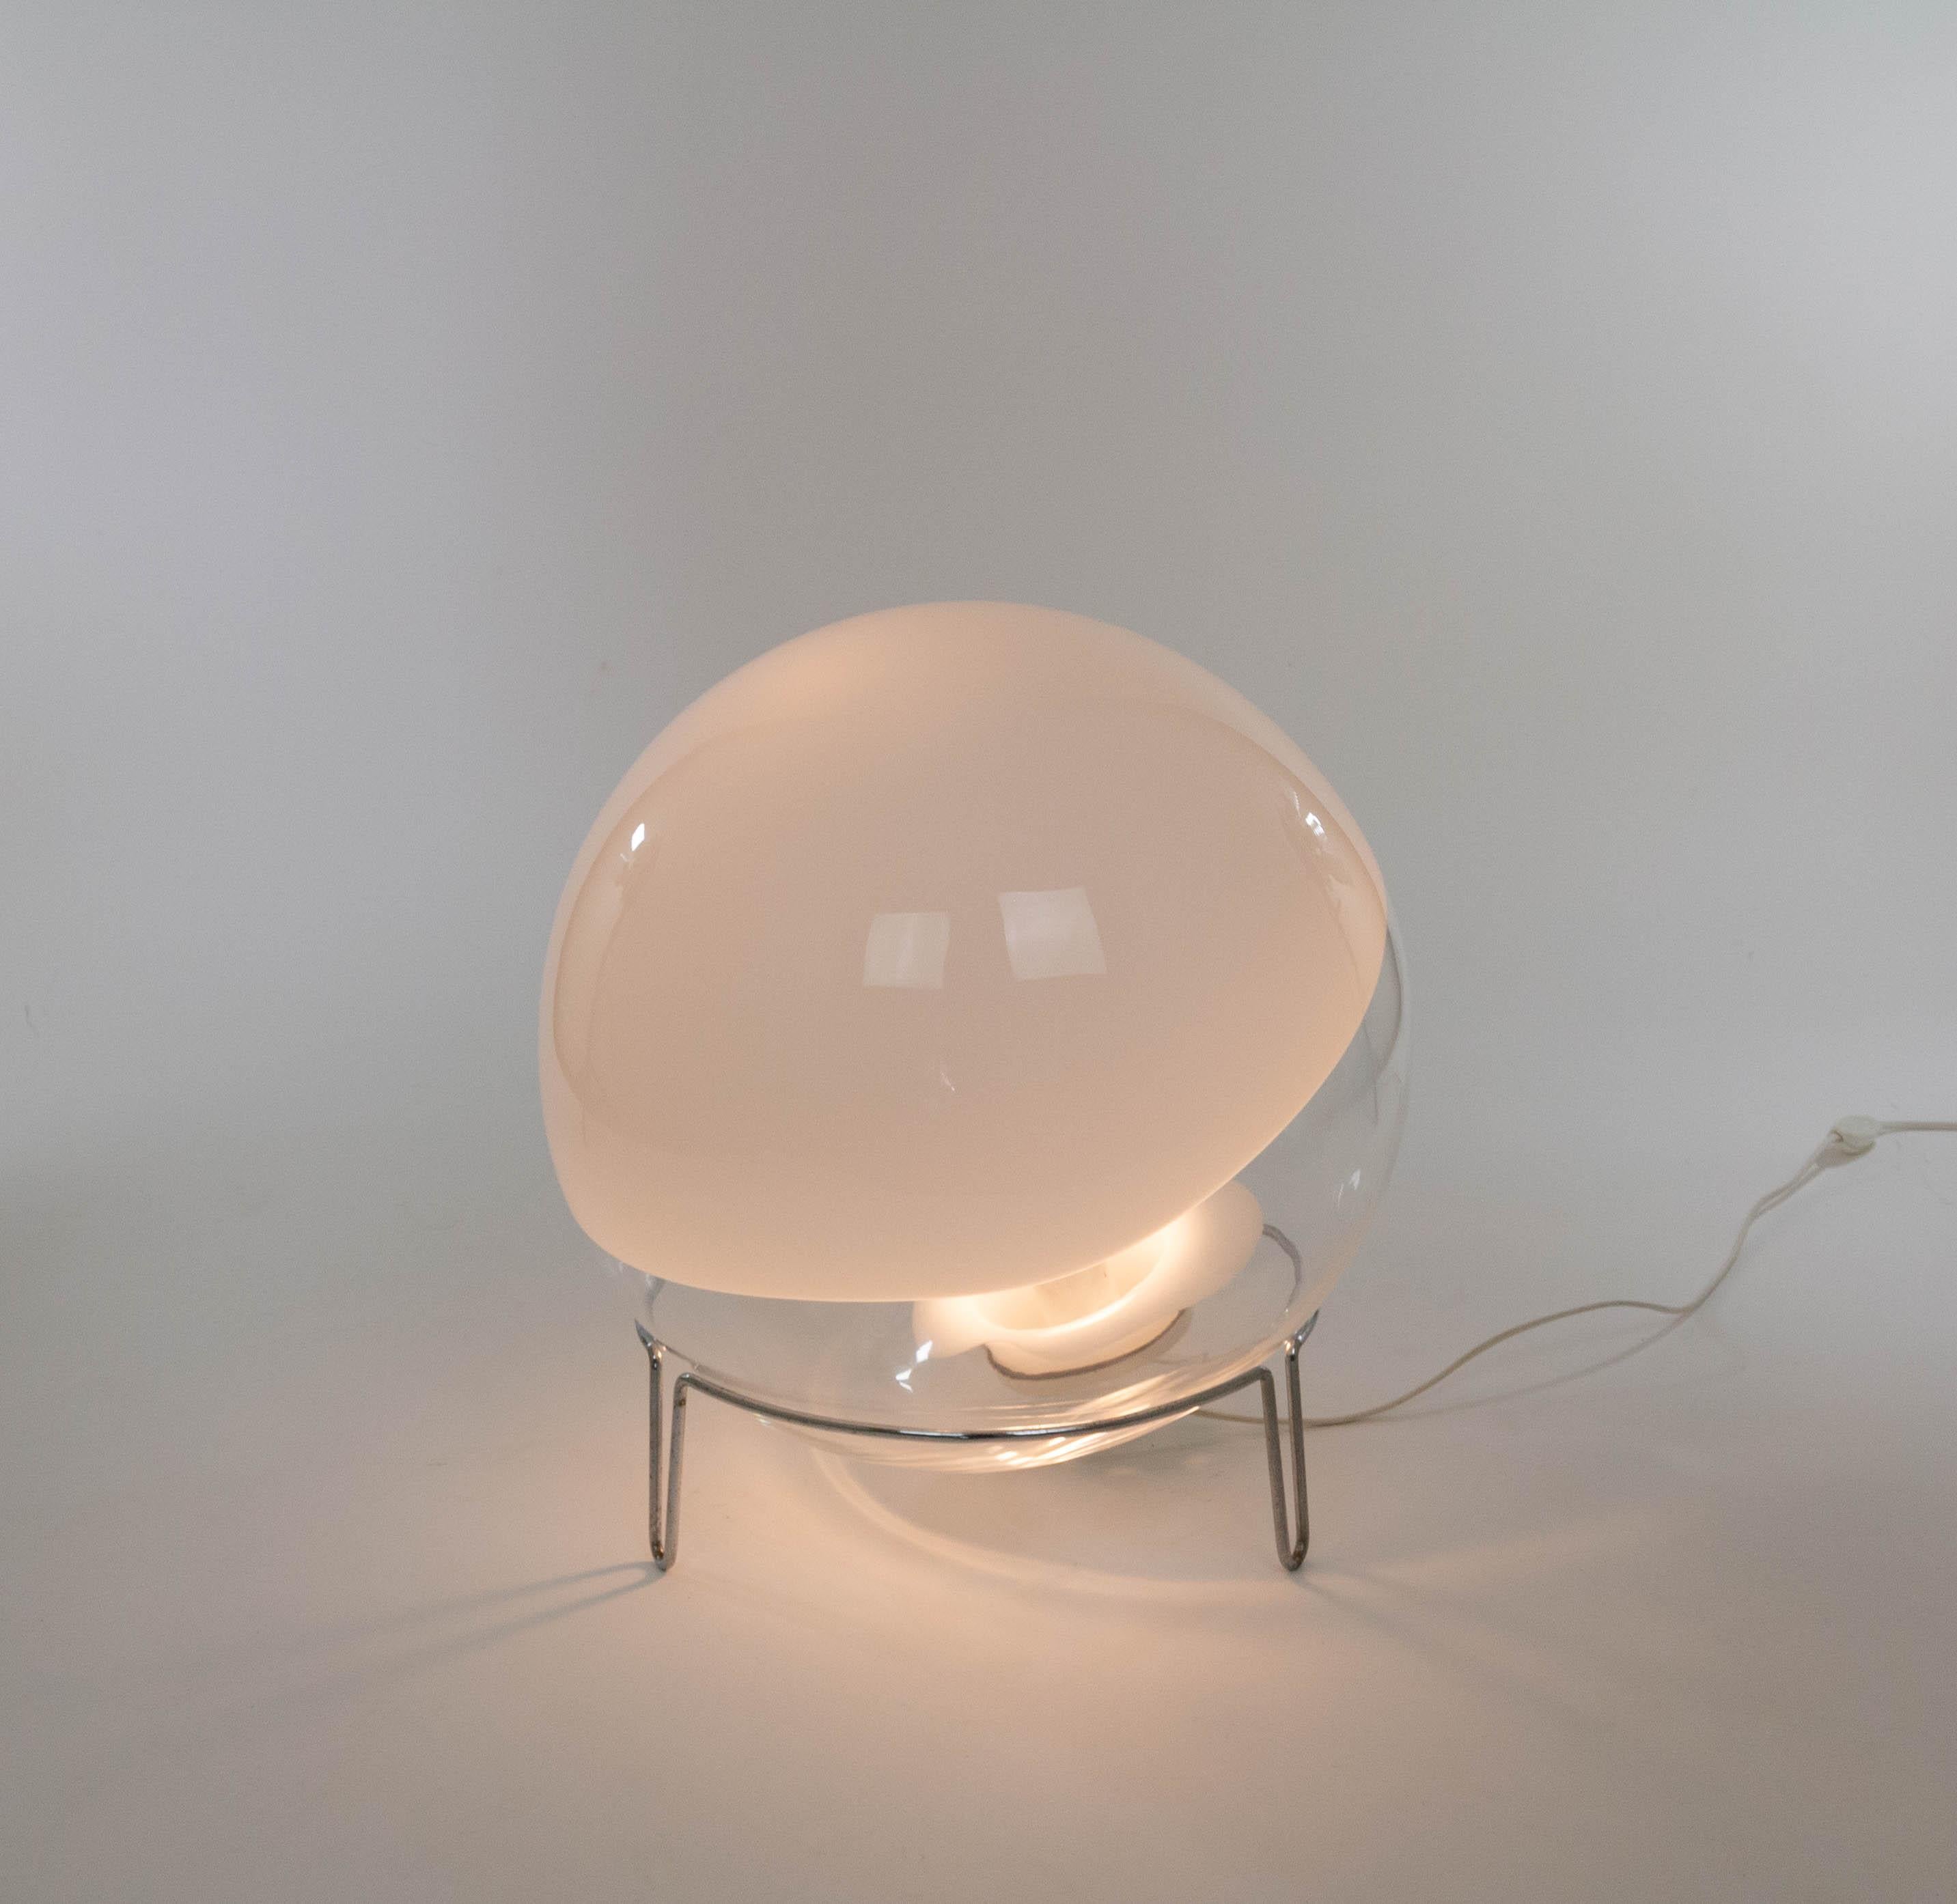 Lampe de table ou lampadaire Sfera conçue par Angelo Mangiarotti pour Skipper Pollux, années 1980.

La lampe est composée de verre de Murano blanc et transparent et d'un cadre en métal chromé. La sphère de verre peut être positionnée dans toutes les